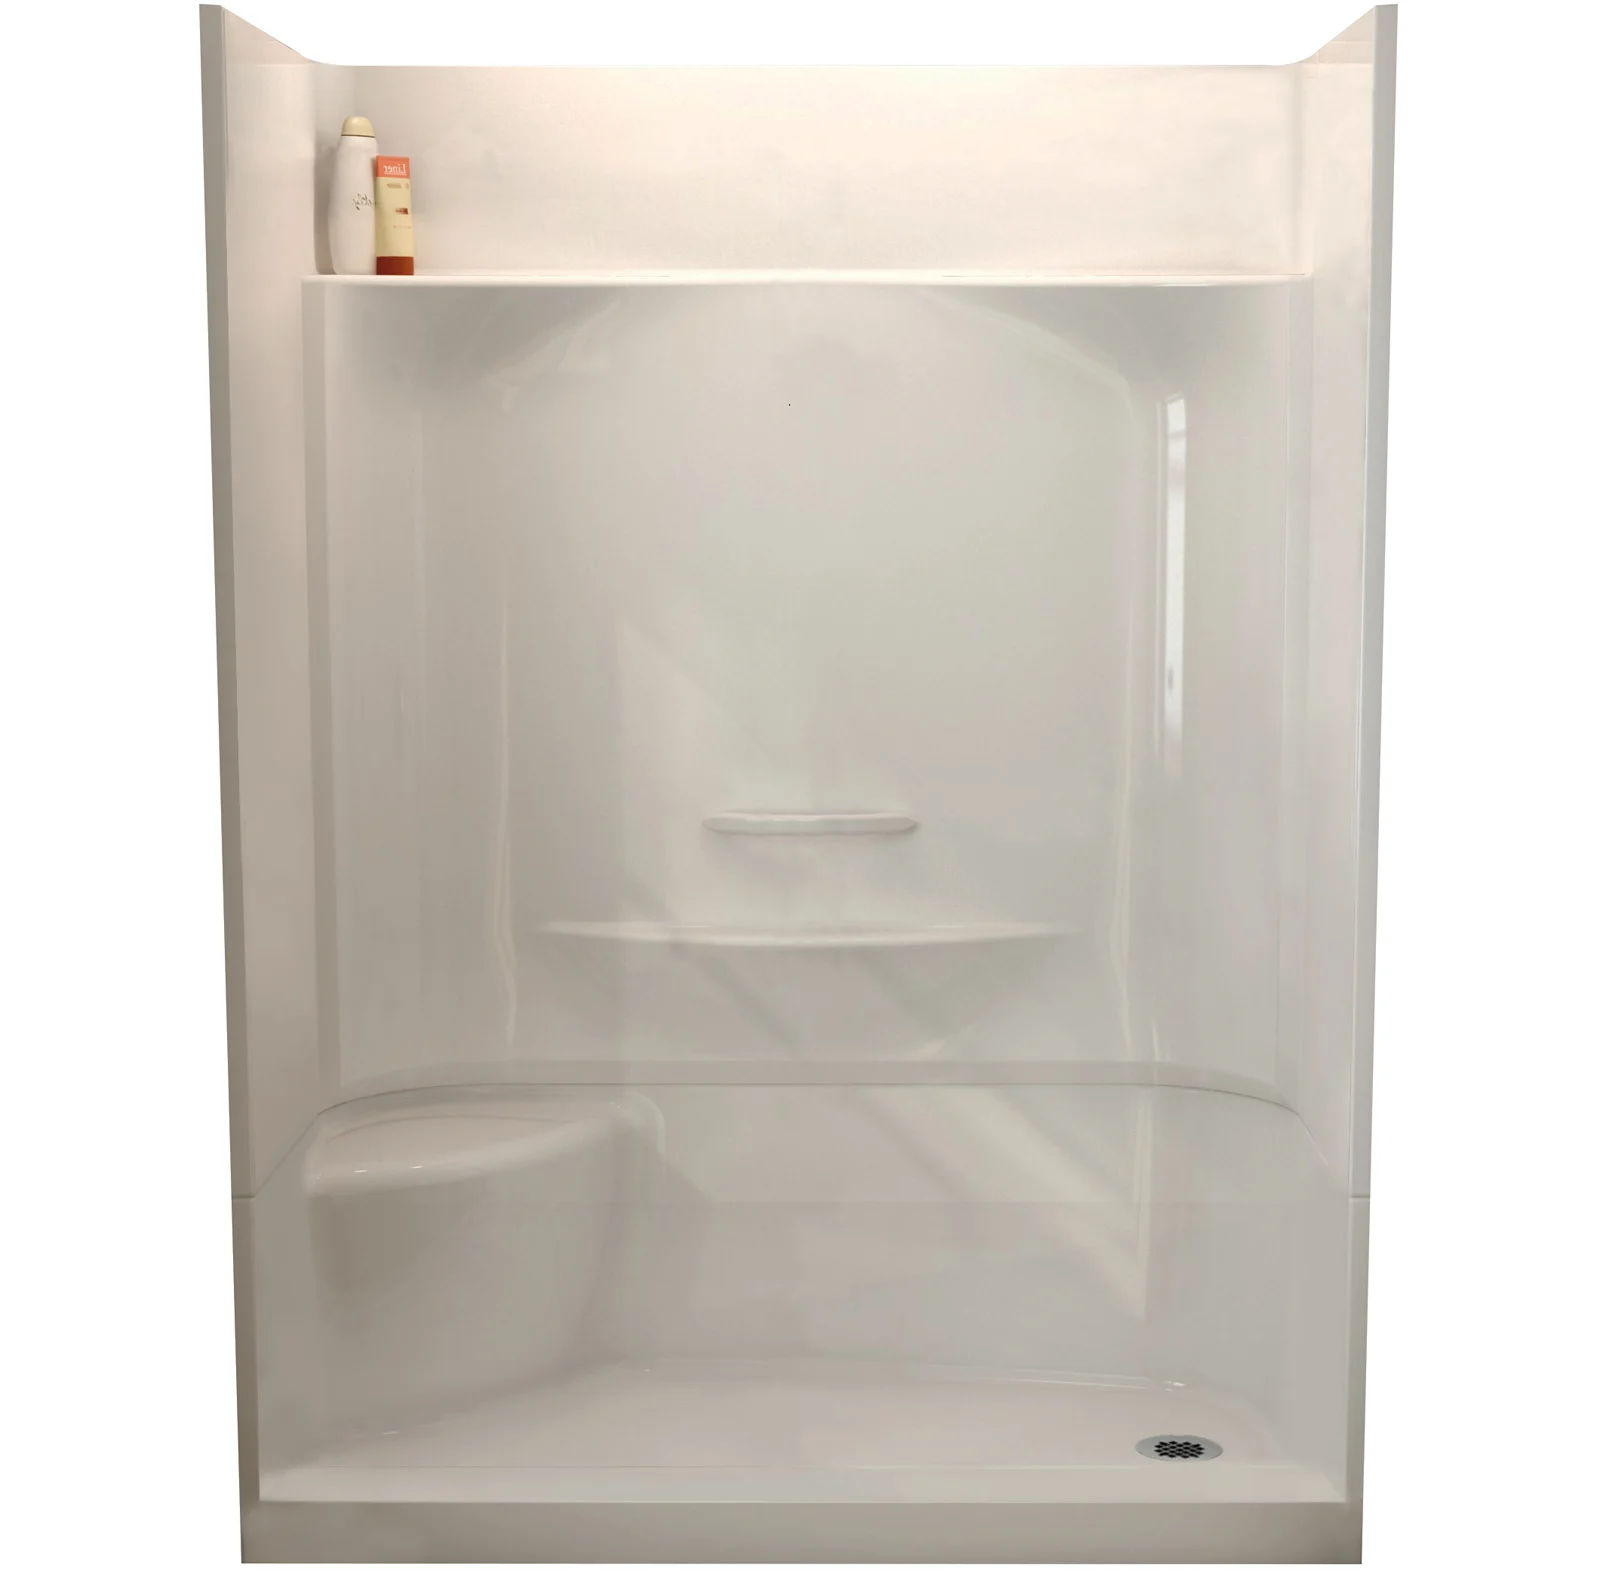 A fibreglass shower stall